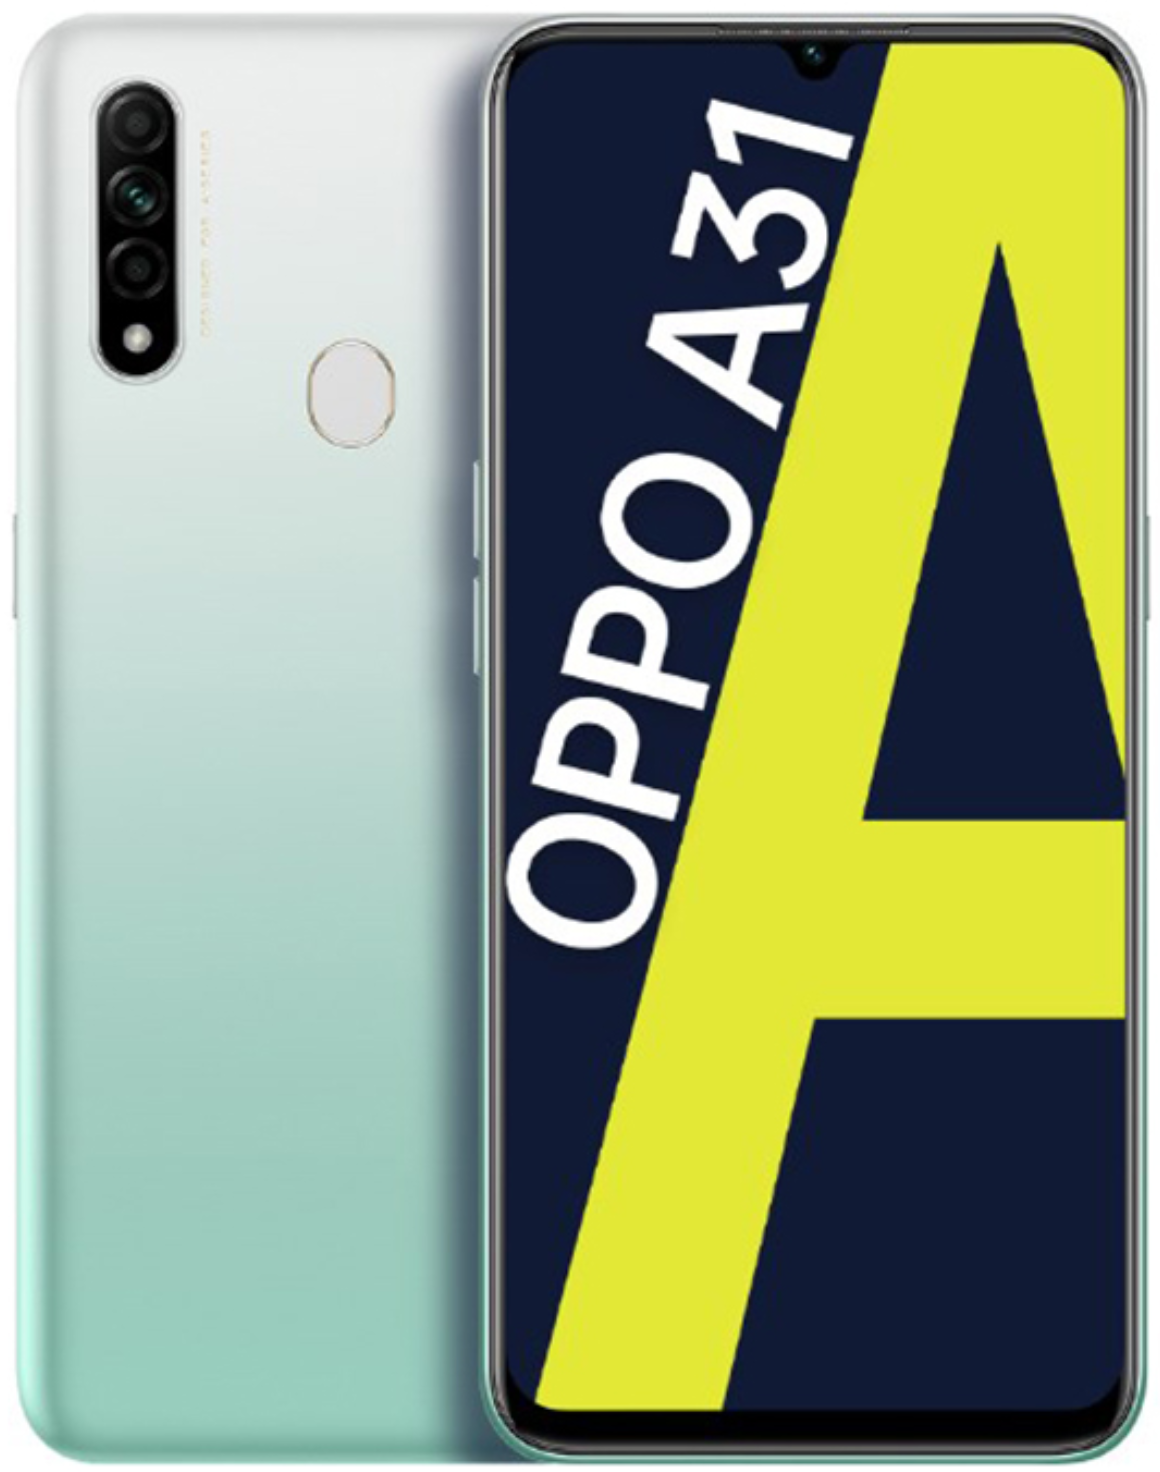 OPPO A31 デュアルSIM 64GB ホワイト(4GB RAM)